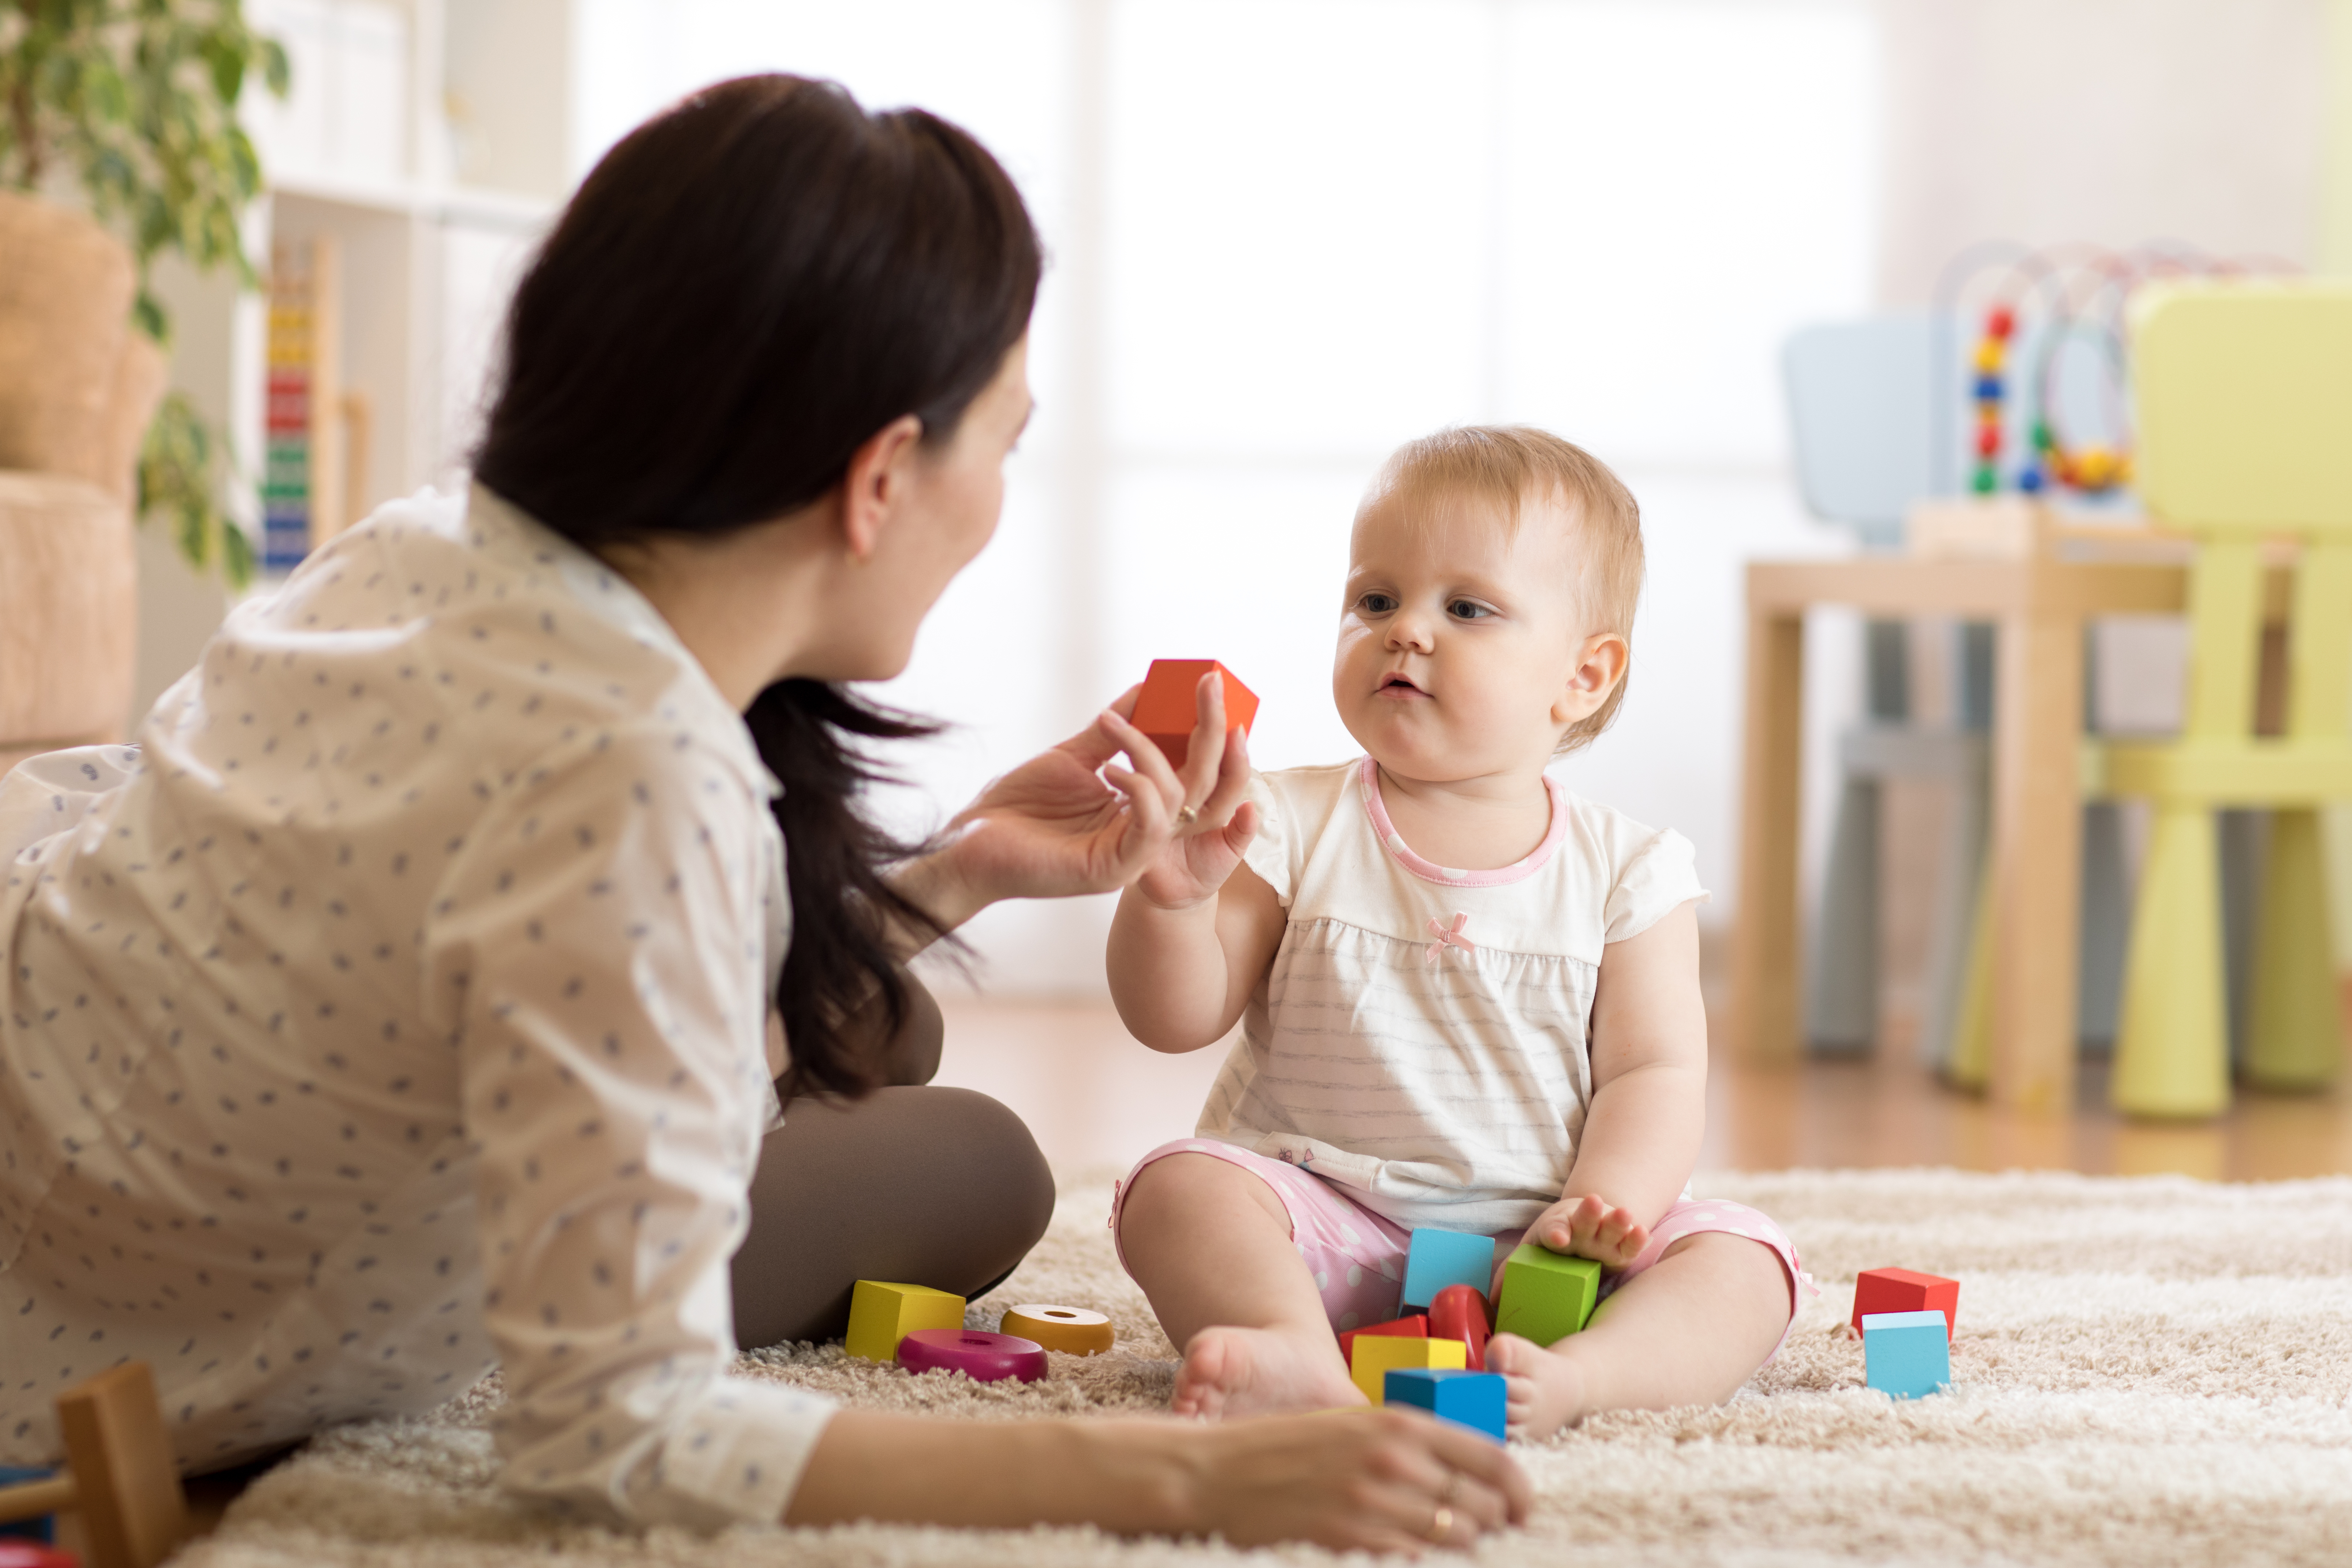 Une femme jouant avec un bébé | Source : Shutterstock